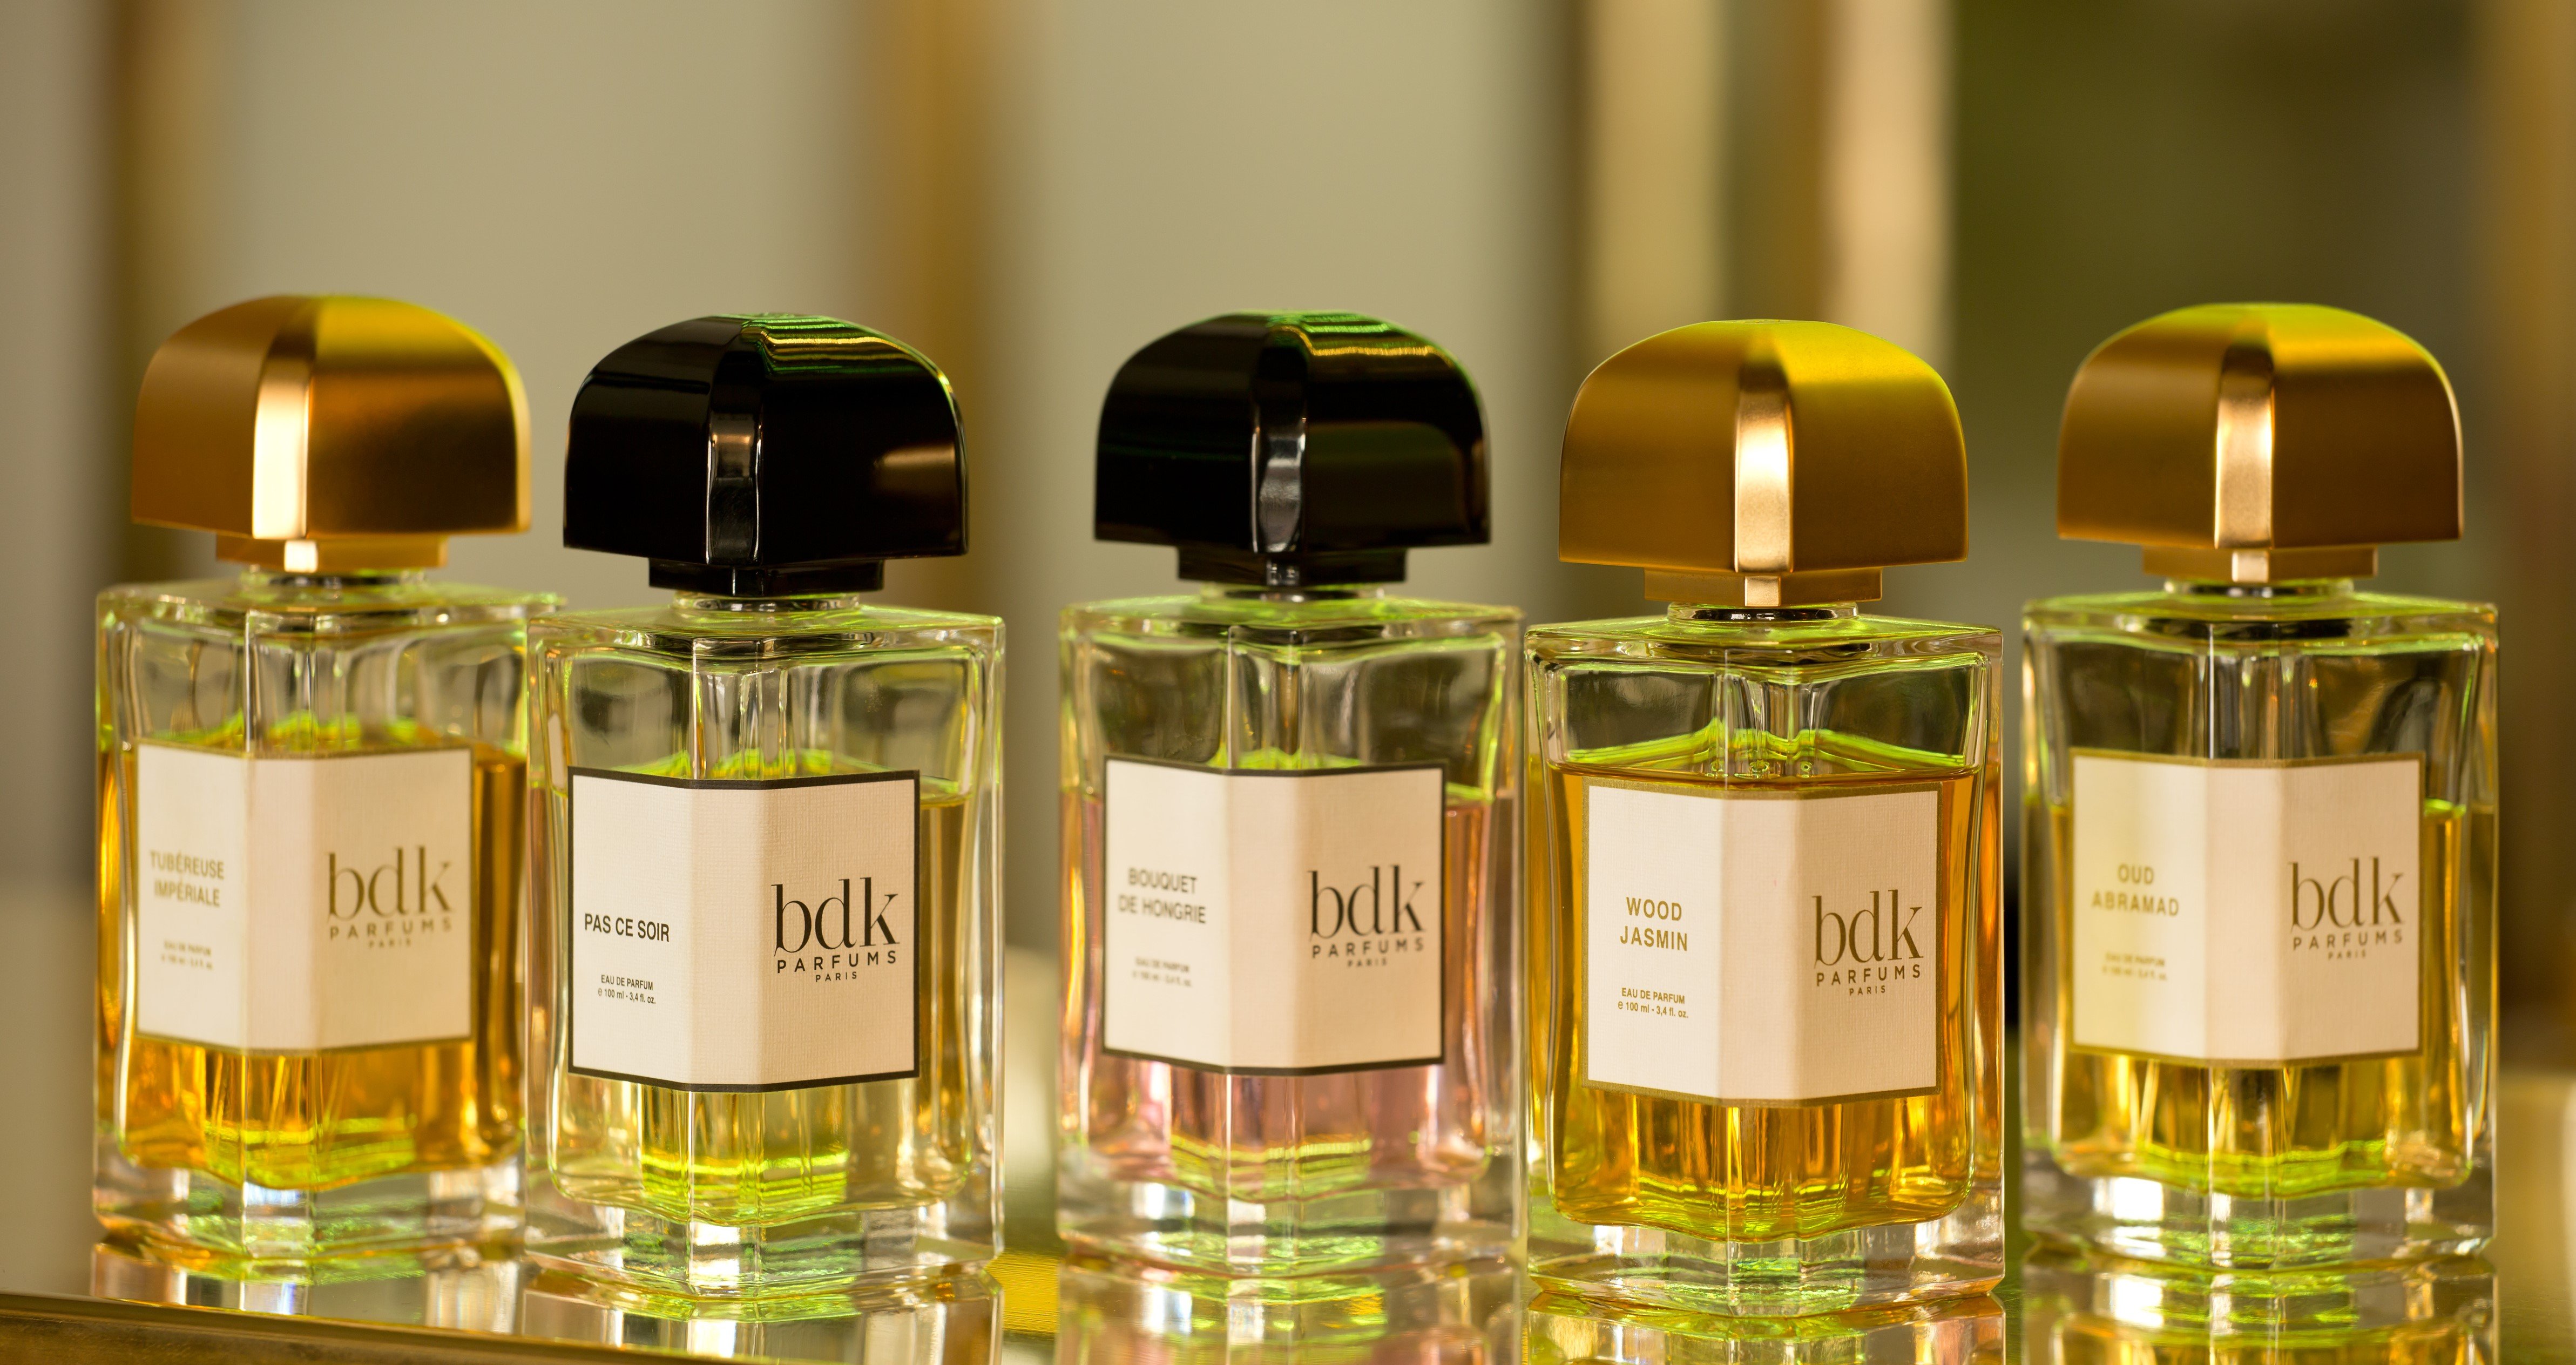 Buy bdk Parfums - Rouge Smoking perfume Sample - Perfume Decants